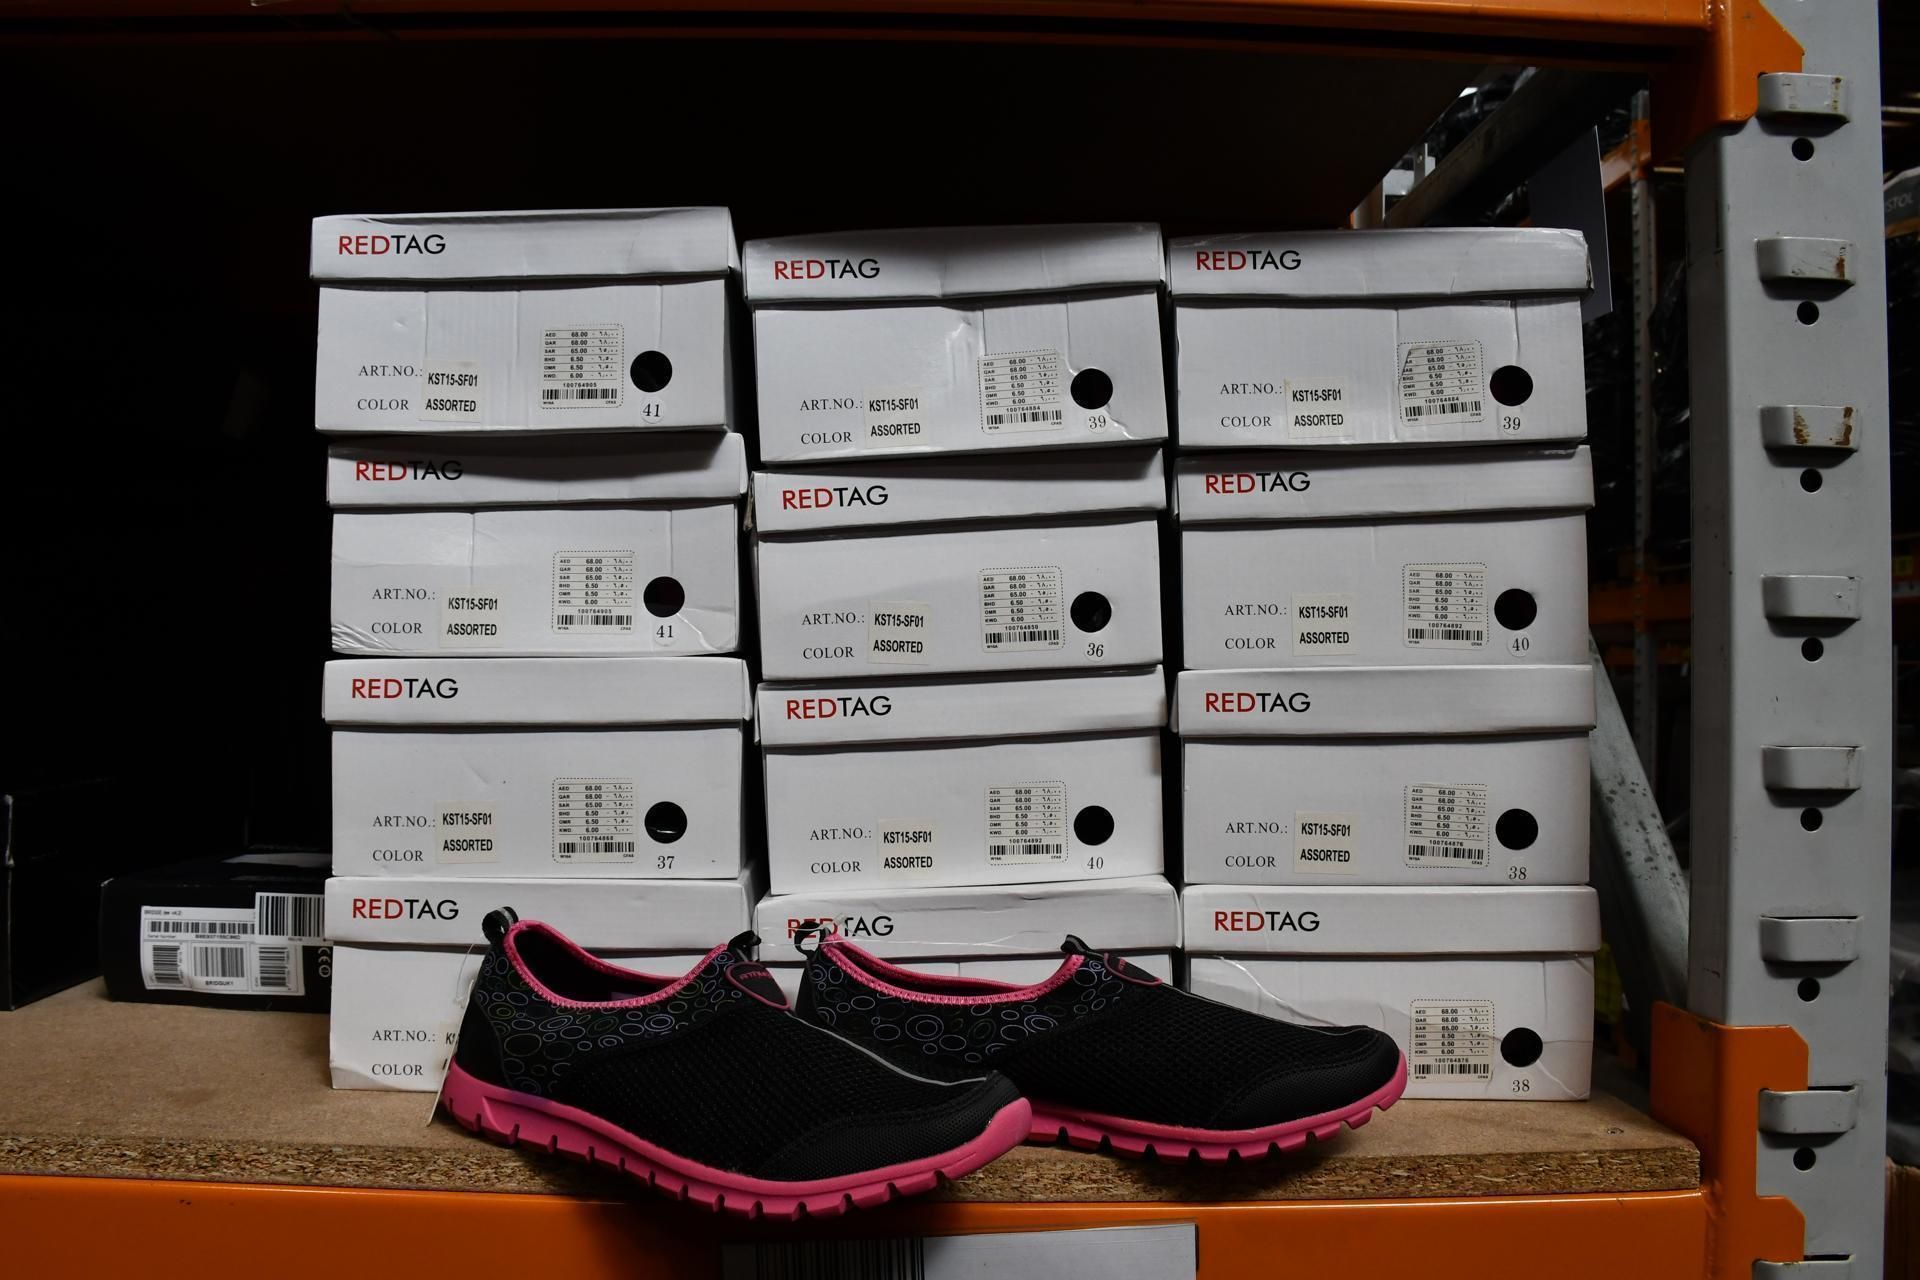 Twelve RedTag Running Shoes, Pink/Black, Mixed Sizes. Women's. Unworn with Boxes, Unworn